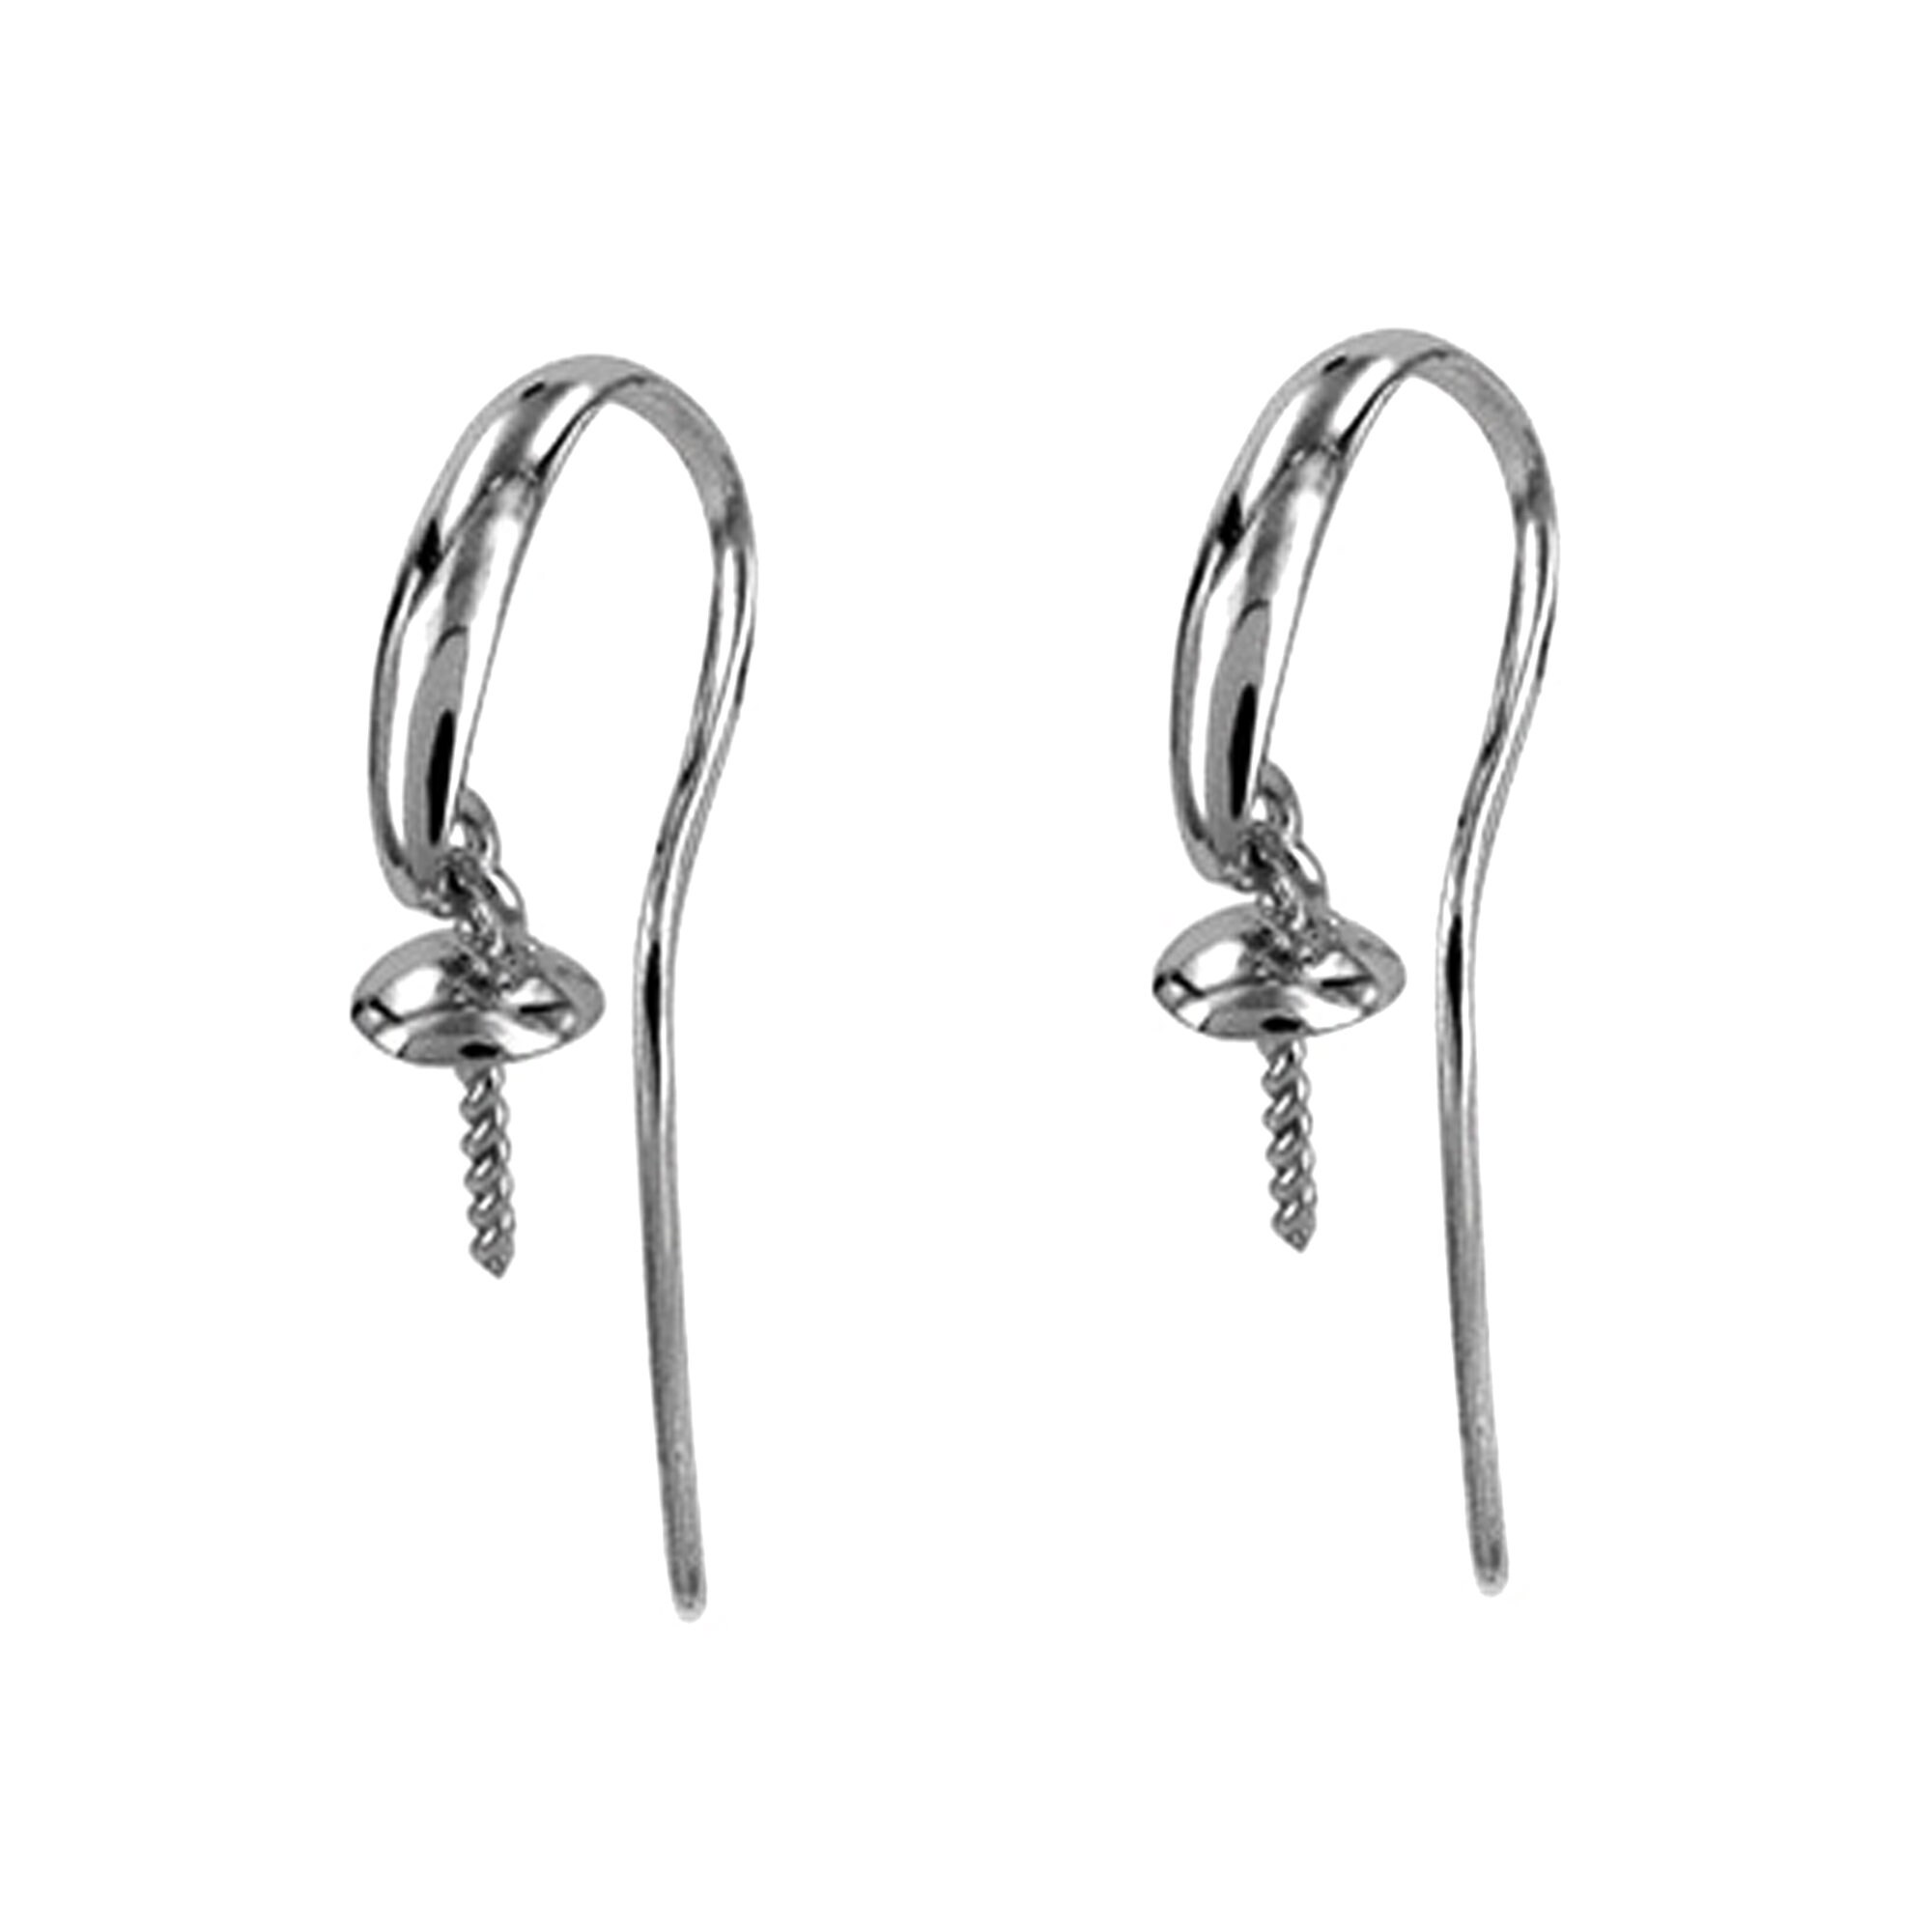 Cheap silver, gold, rose gold Stainless Steel Earring Hooks Kidney Earring  Hooks Handmade Crafts Lovers